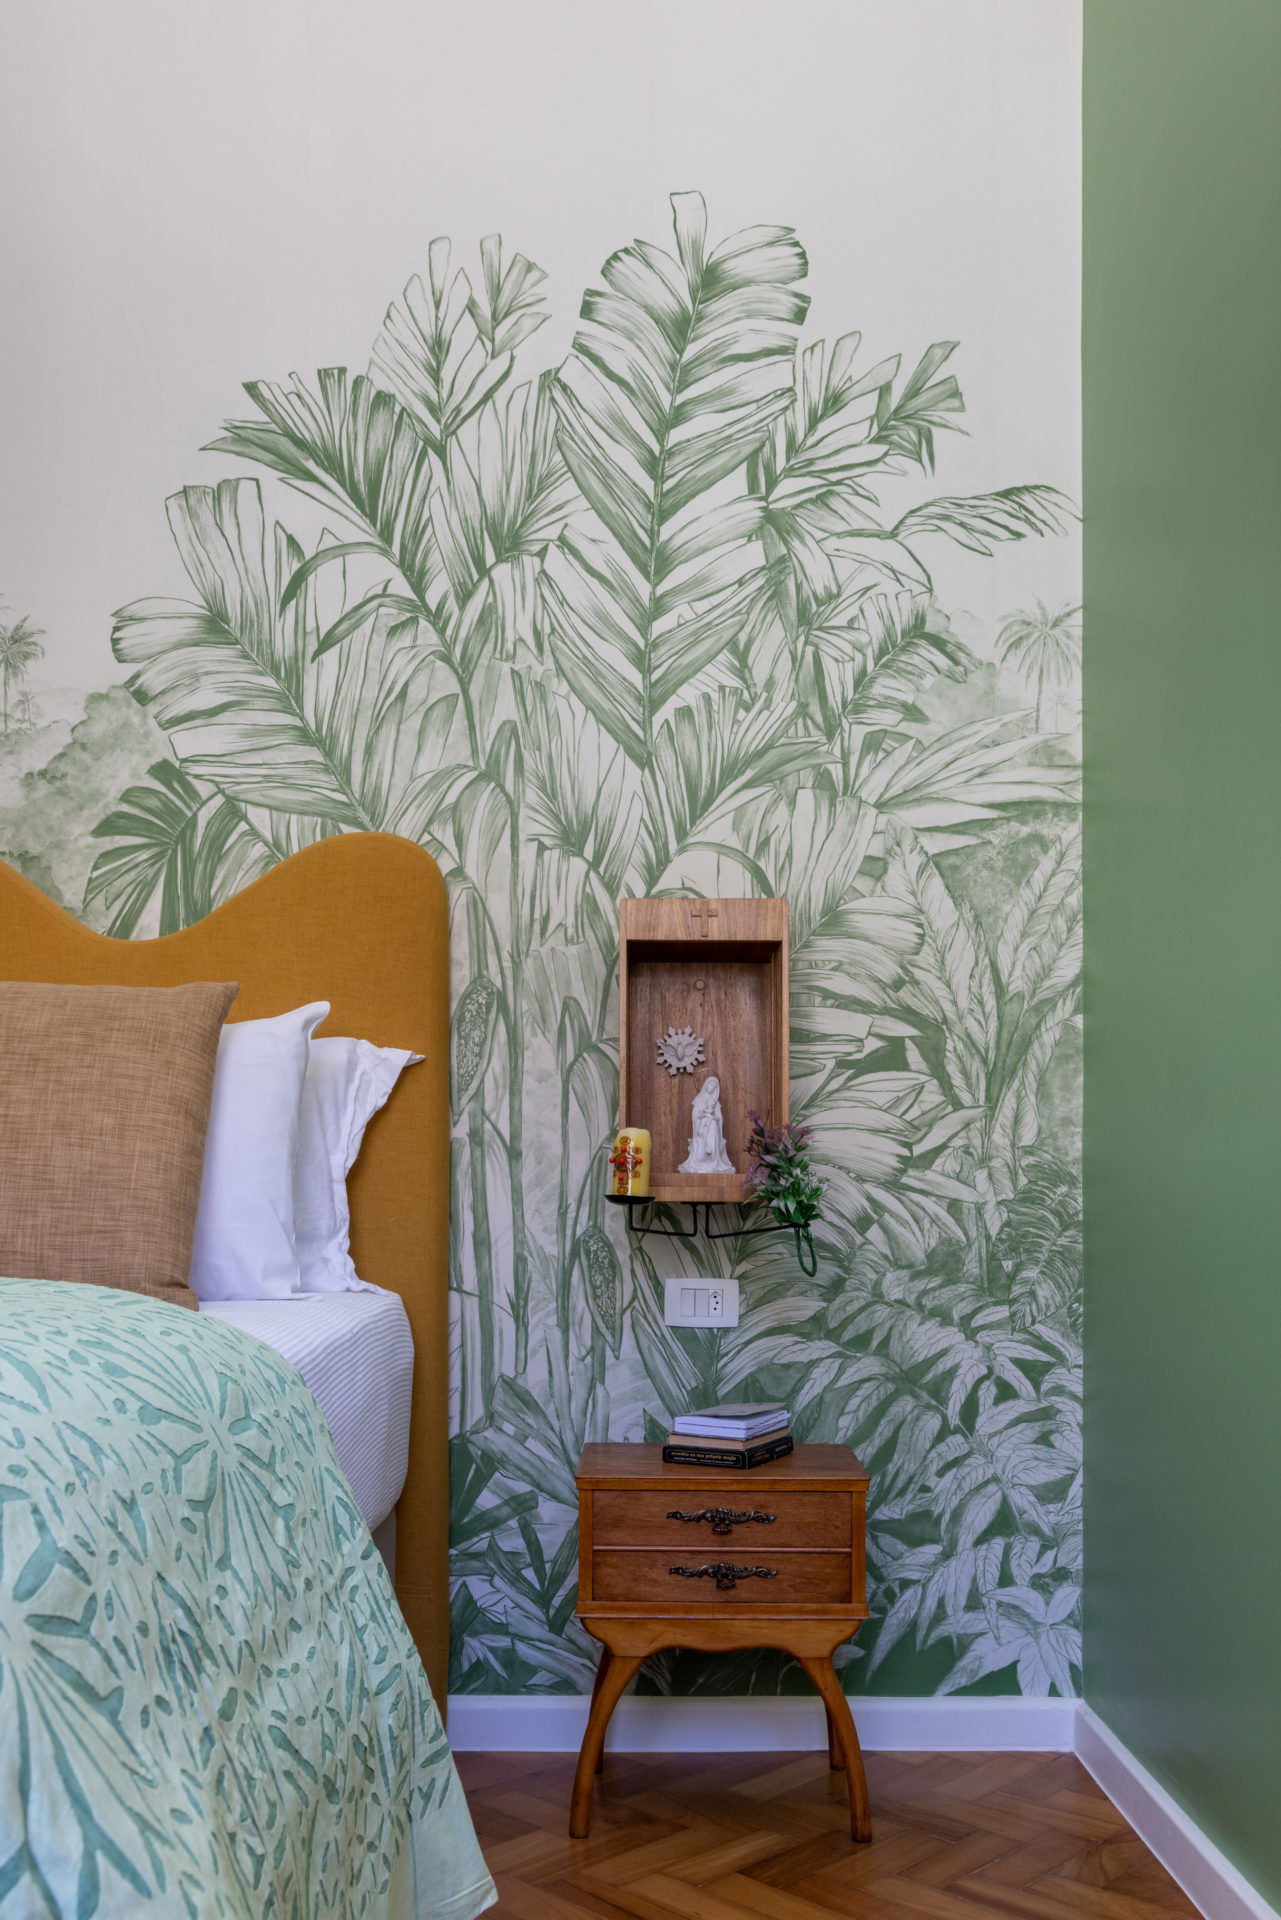 Cabeceira amarela, e na parede atras da cama, papel de parede branco e verde, com folhagens. Ao lado da cama, um oratorio em madeira